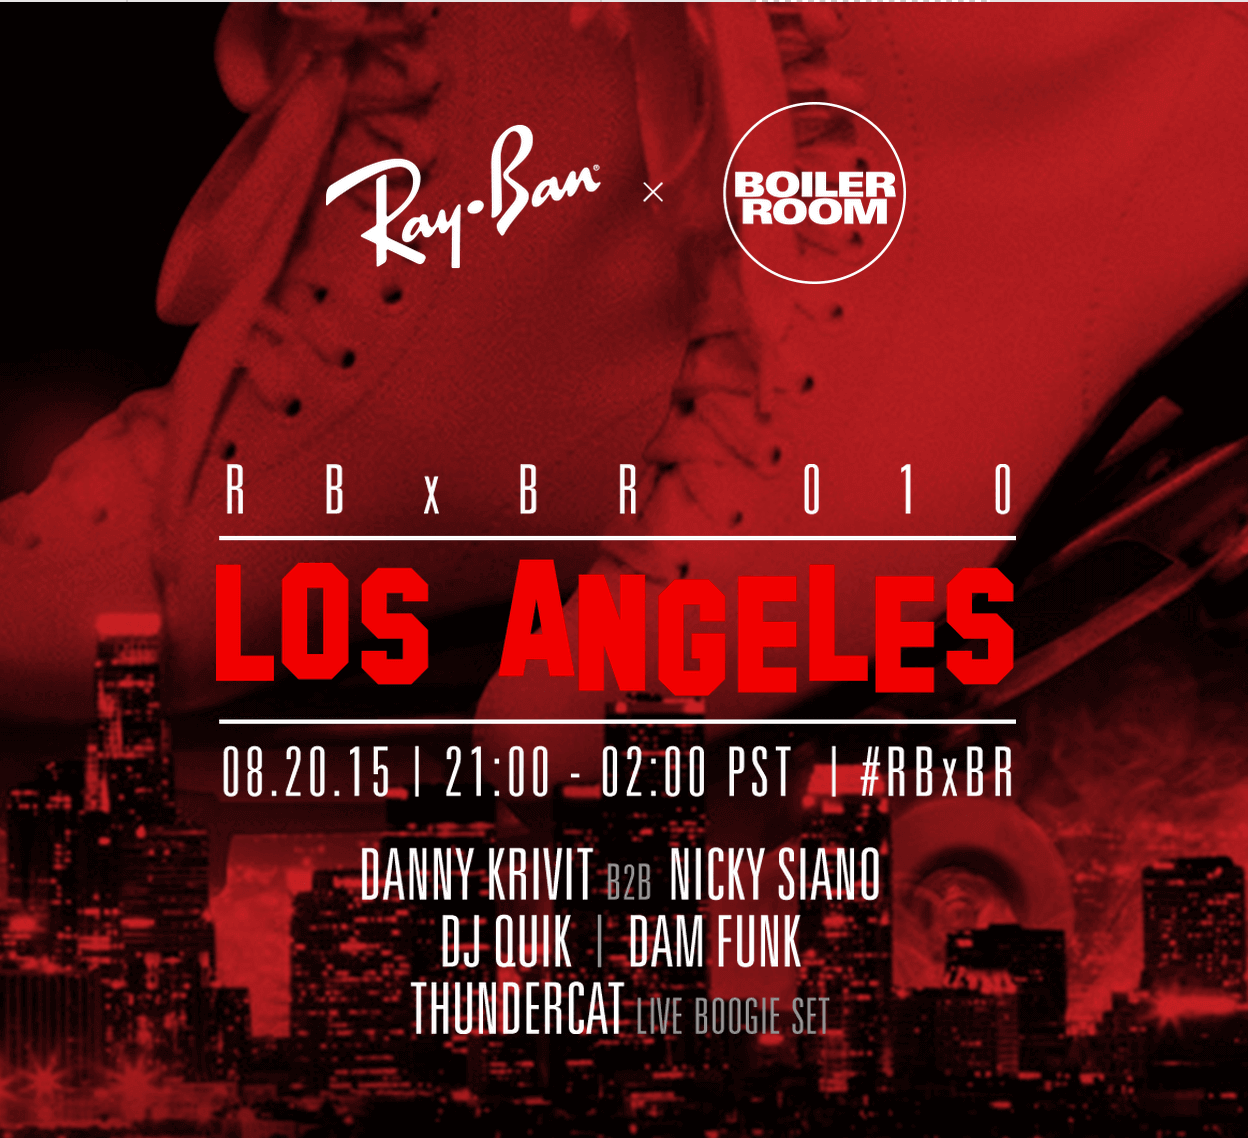 Ray Ban X Boiler Room Los Angeles La Guestlist